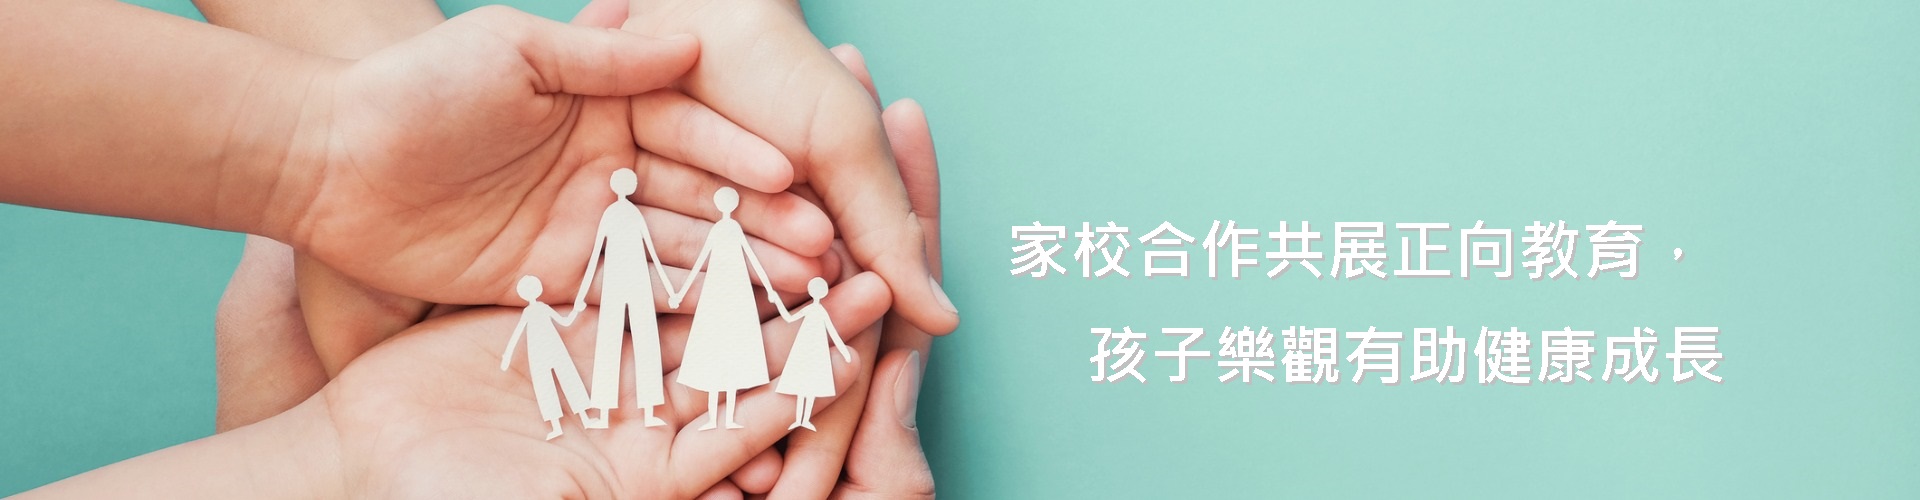 https://www.parent.edu.hk/zh-chs/article/家校合作共展正向教育-孩子乐观有助健康成长